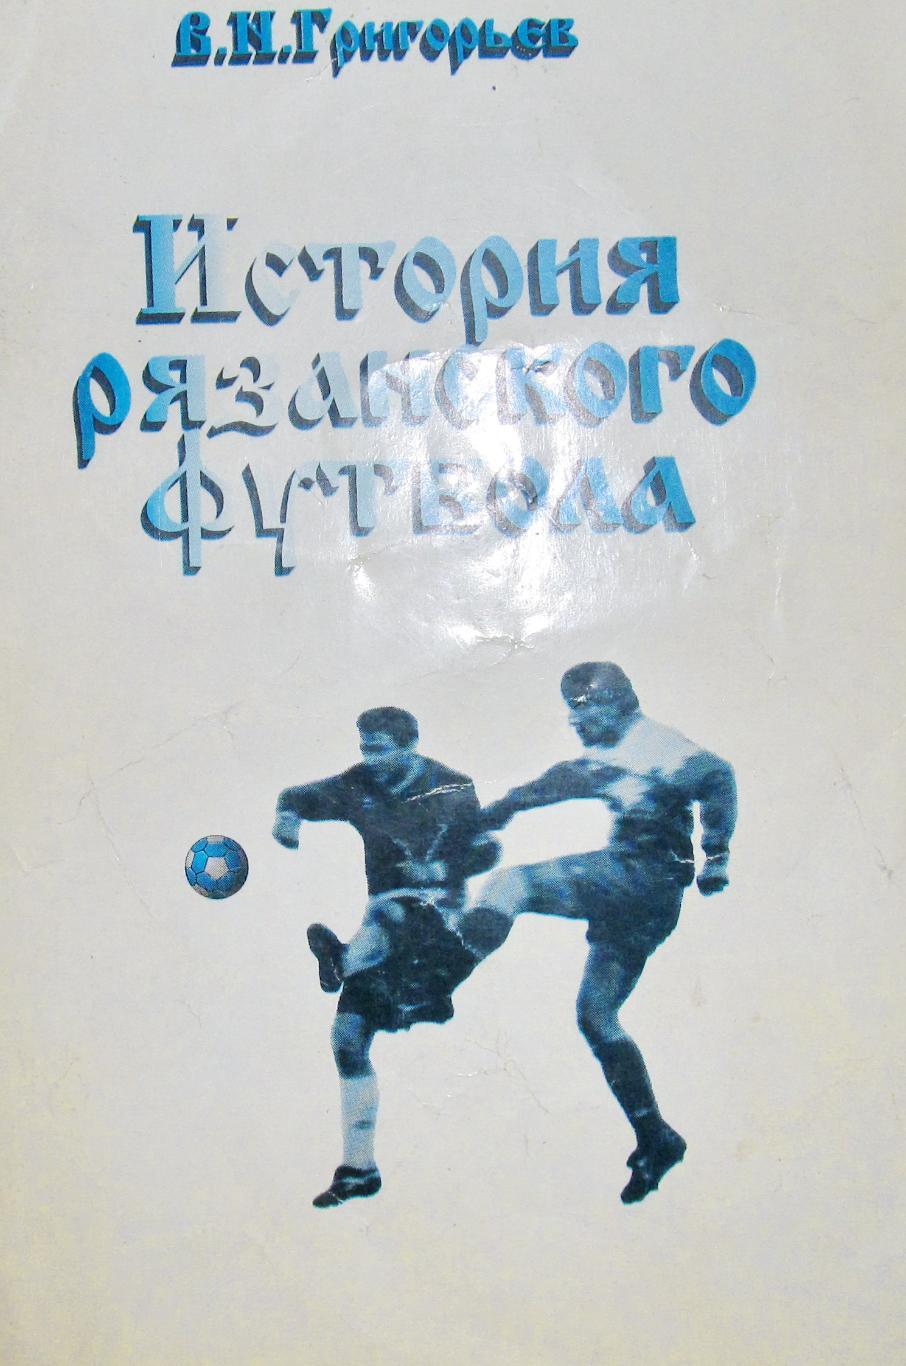 История Рязанского футбола В.Н Григорьев. 1911-1996 годы.